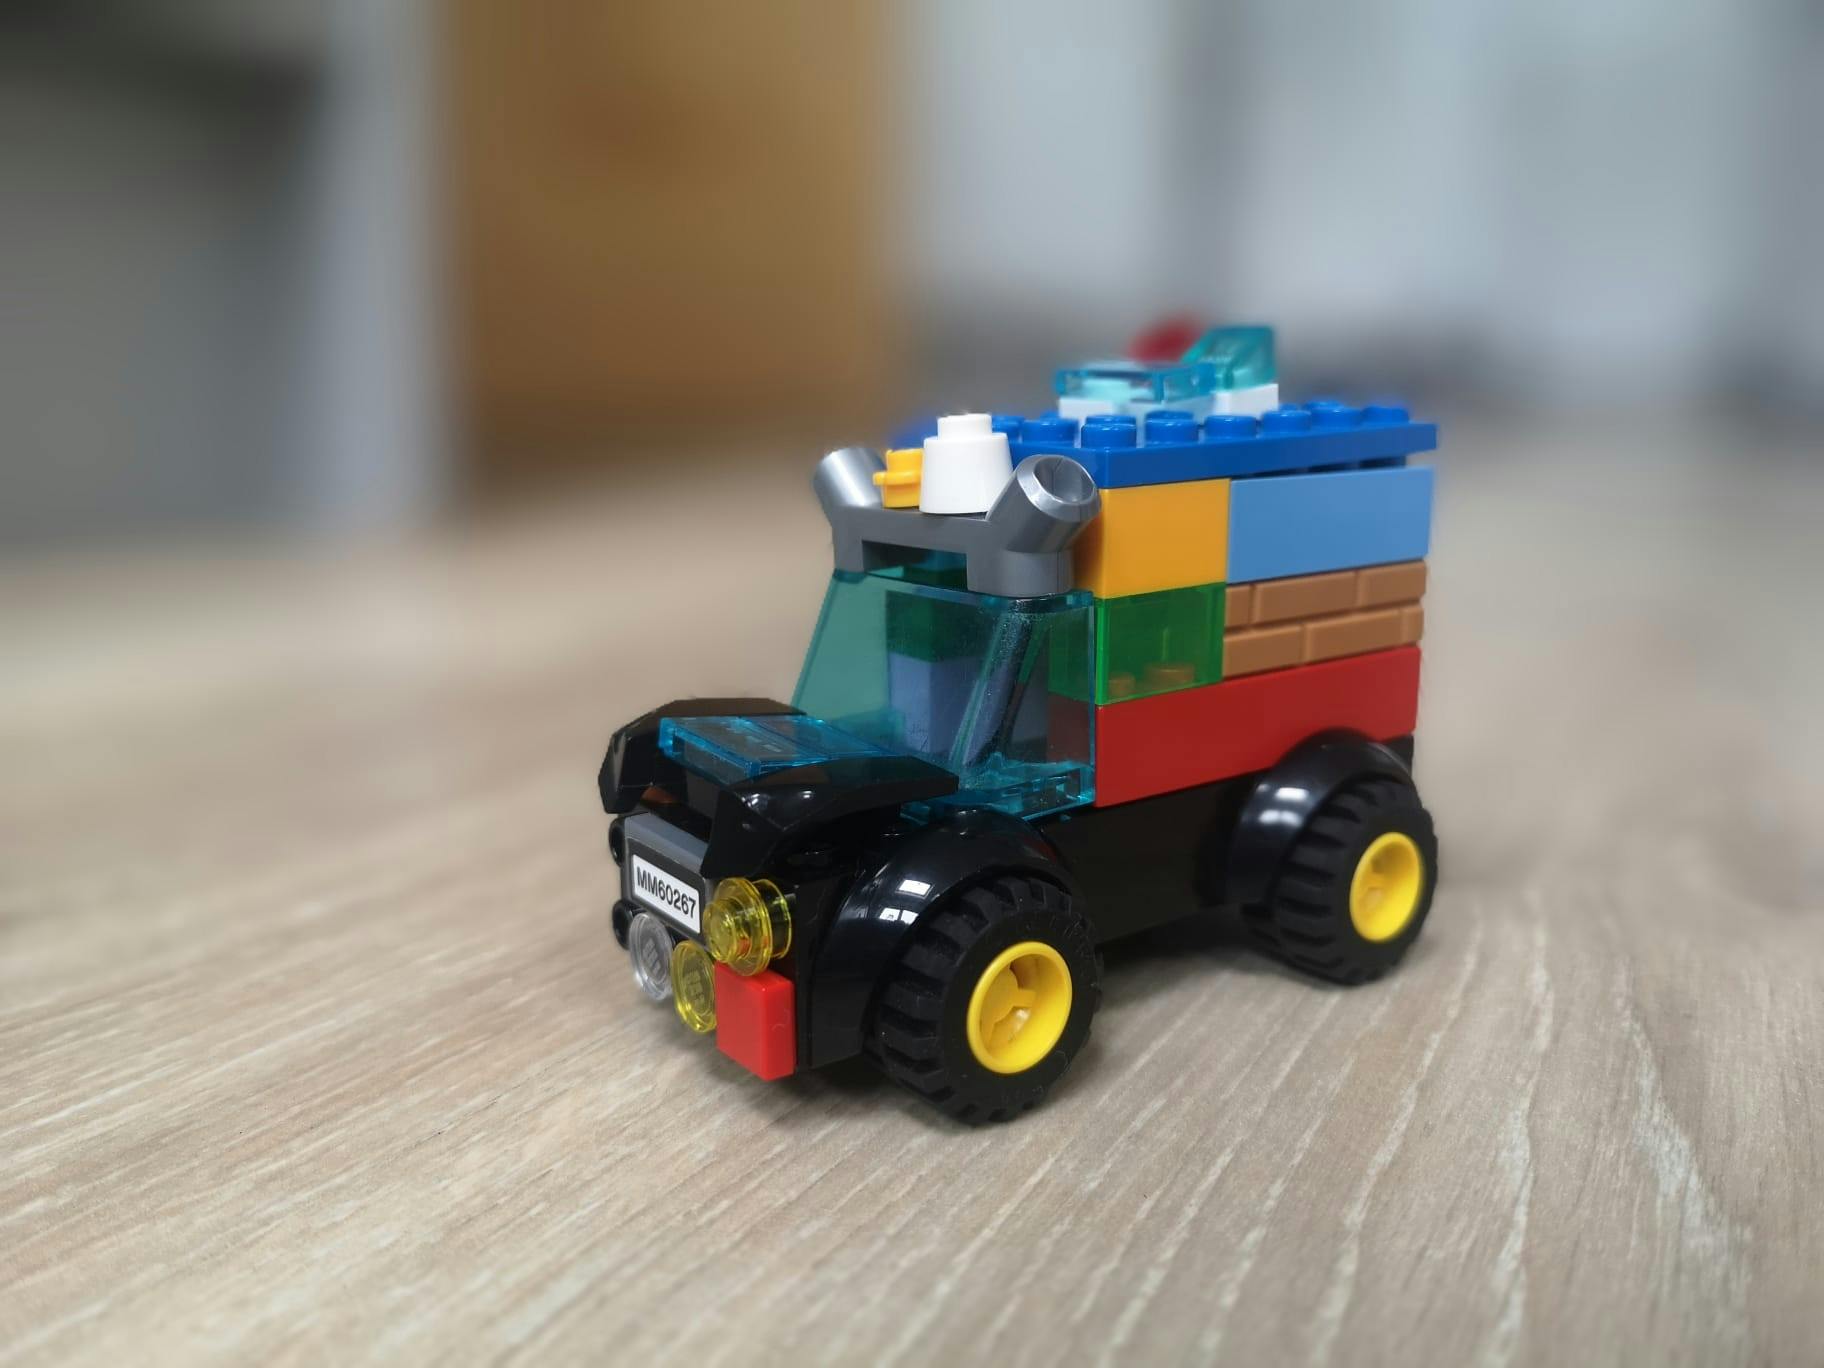 A LEGO Car